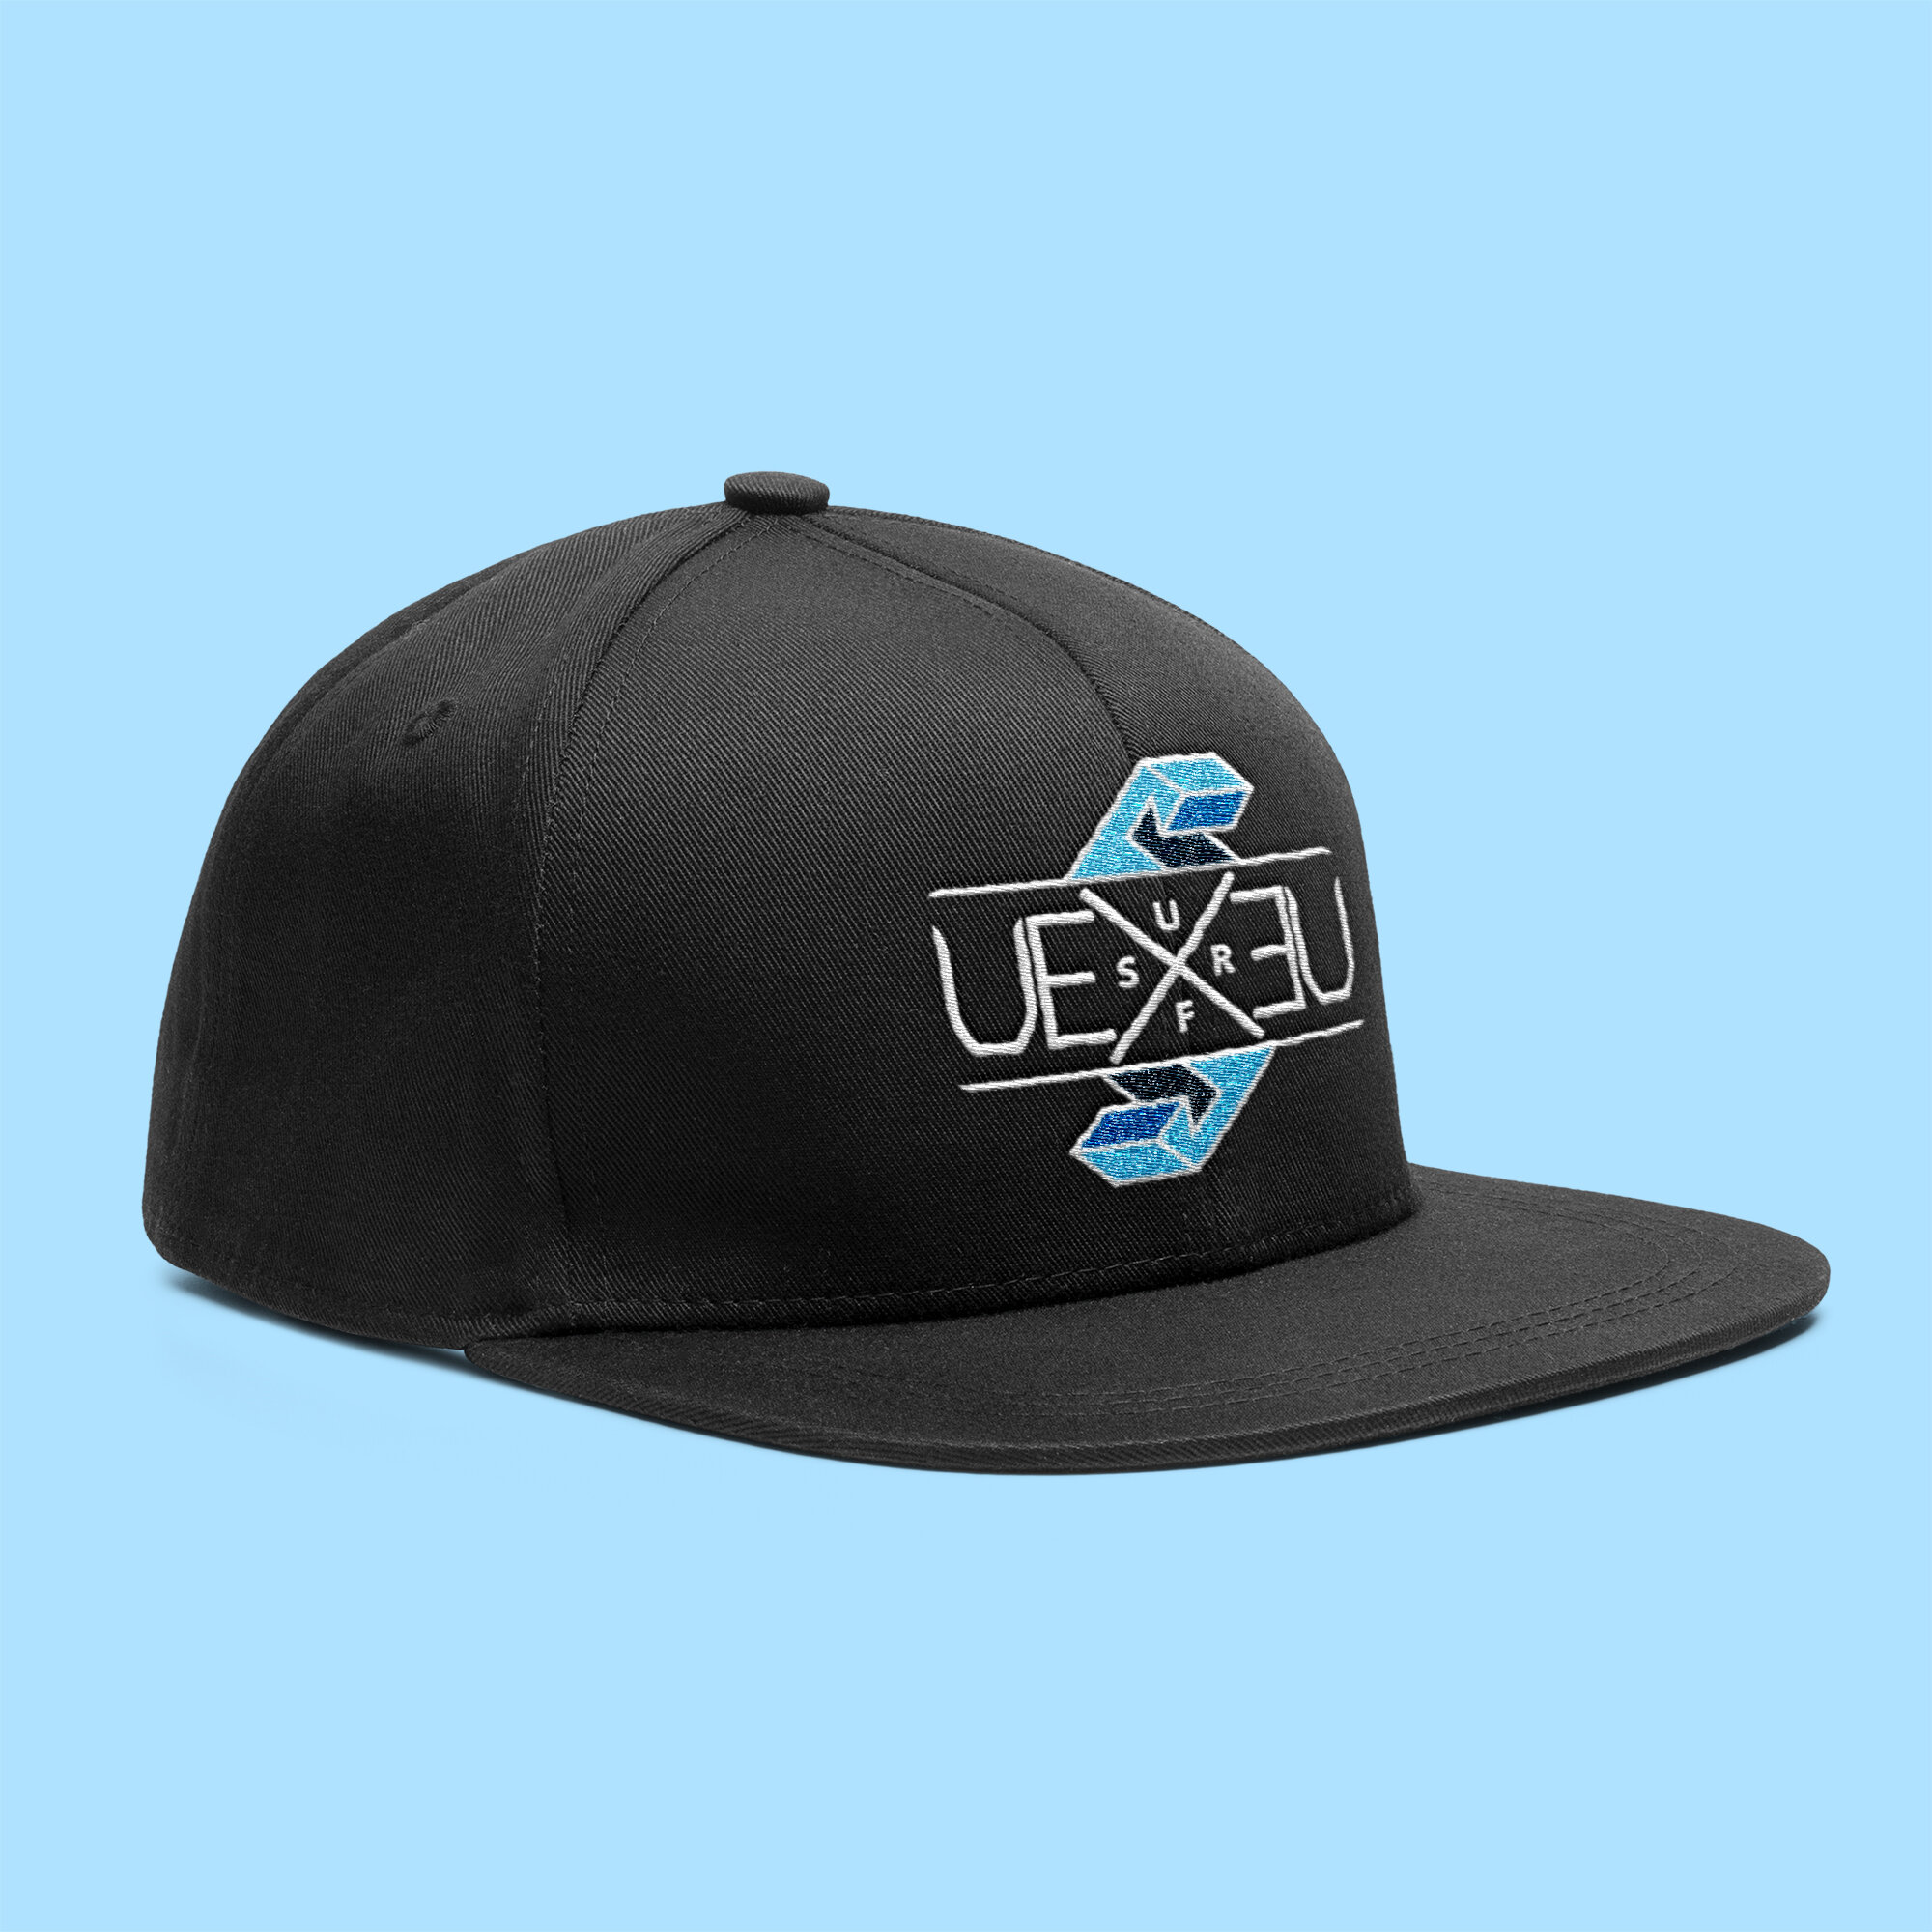 UEXEU_SURF_Hat.JPG